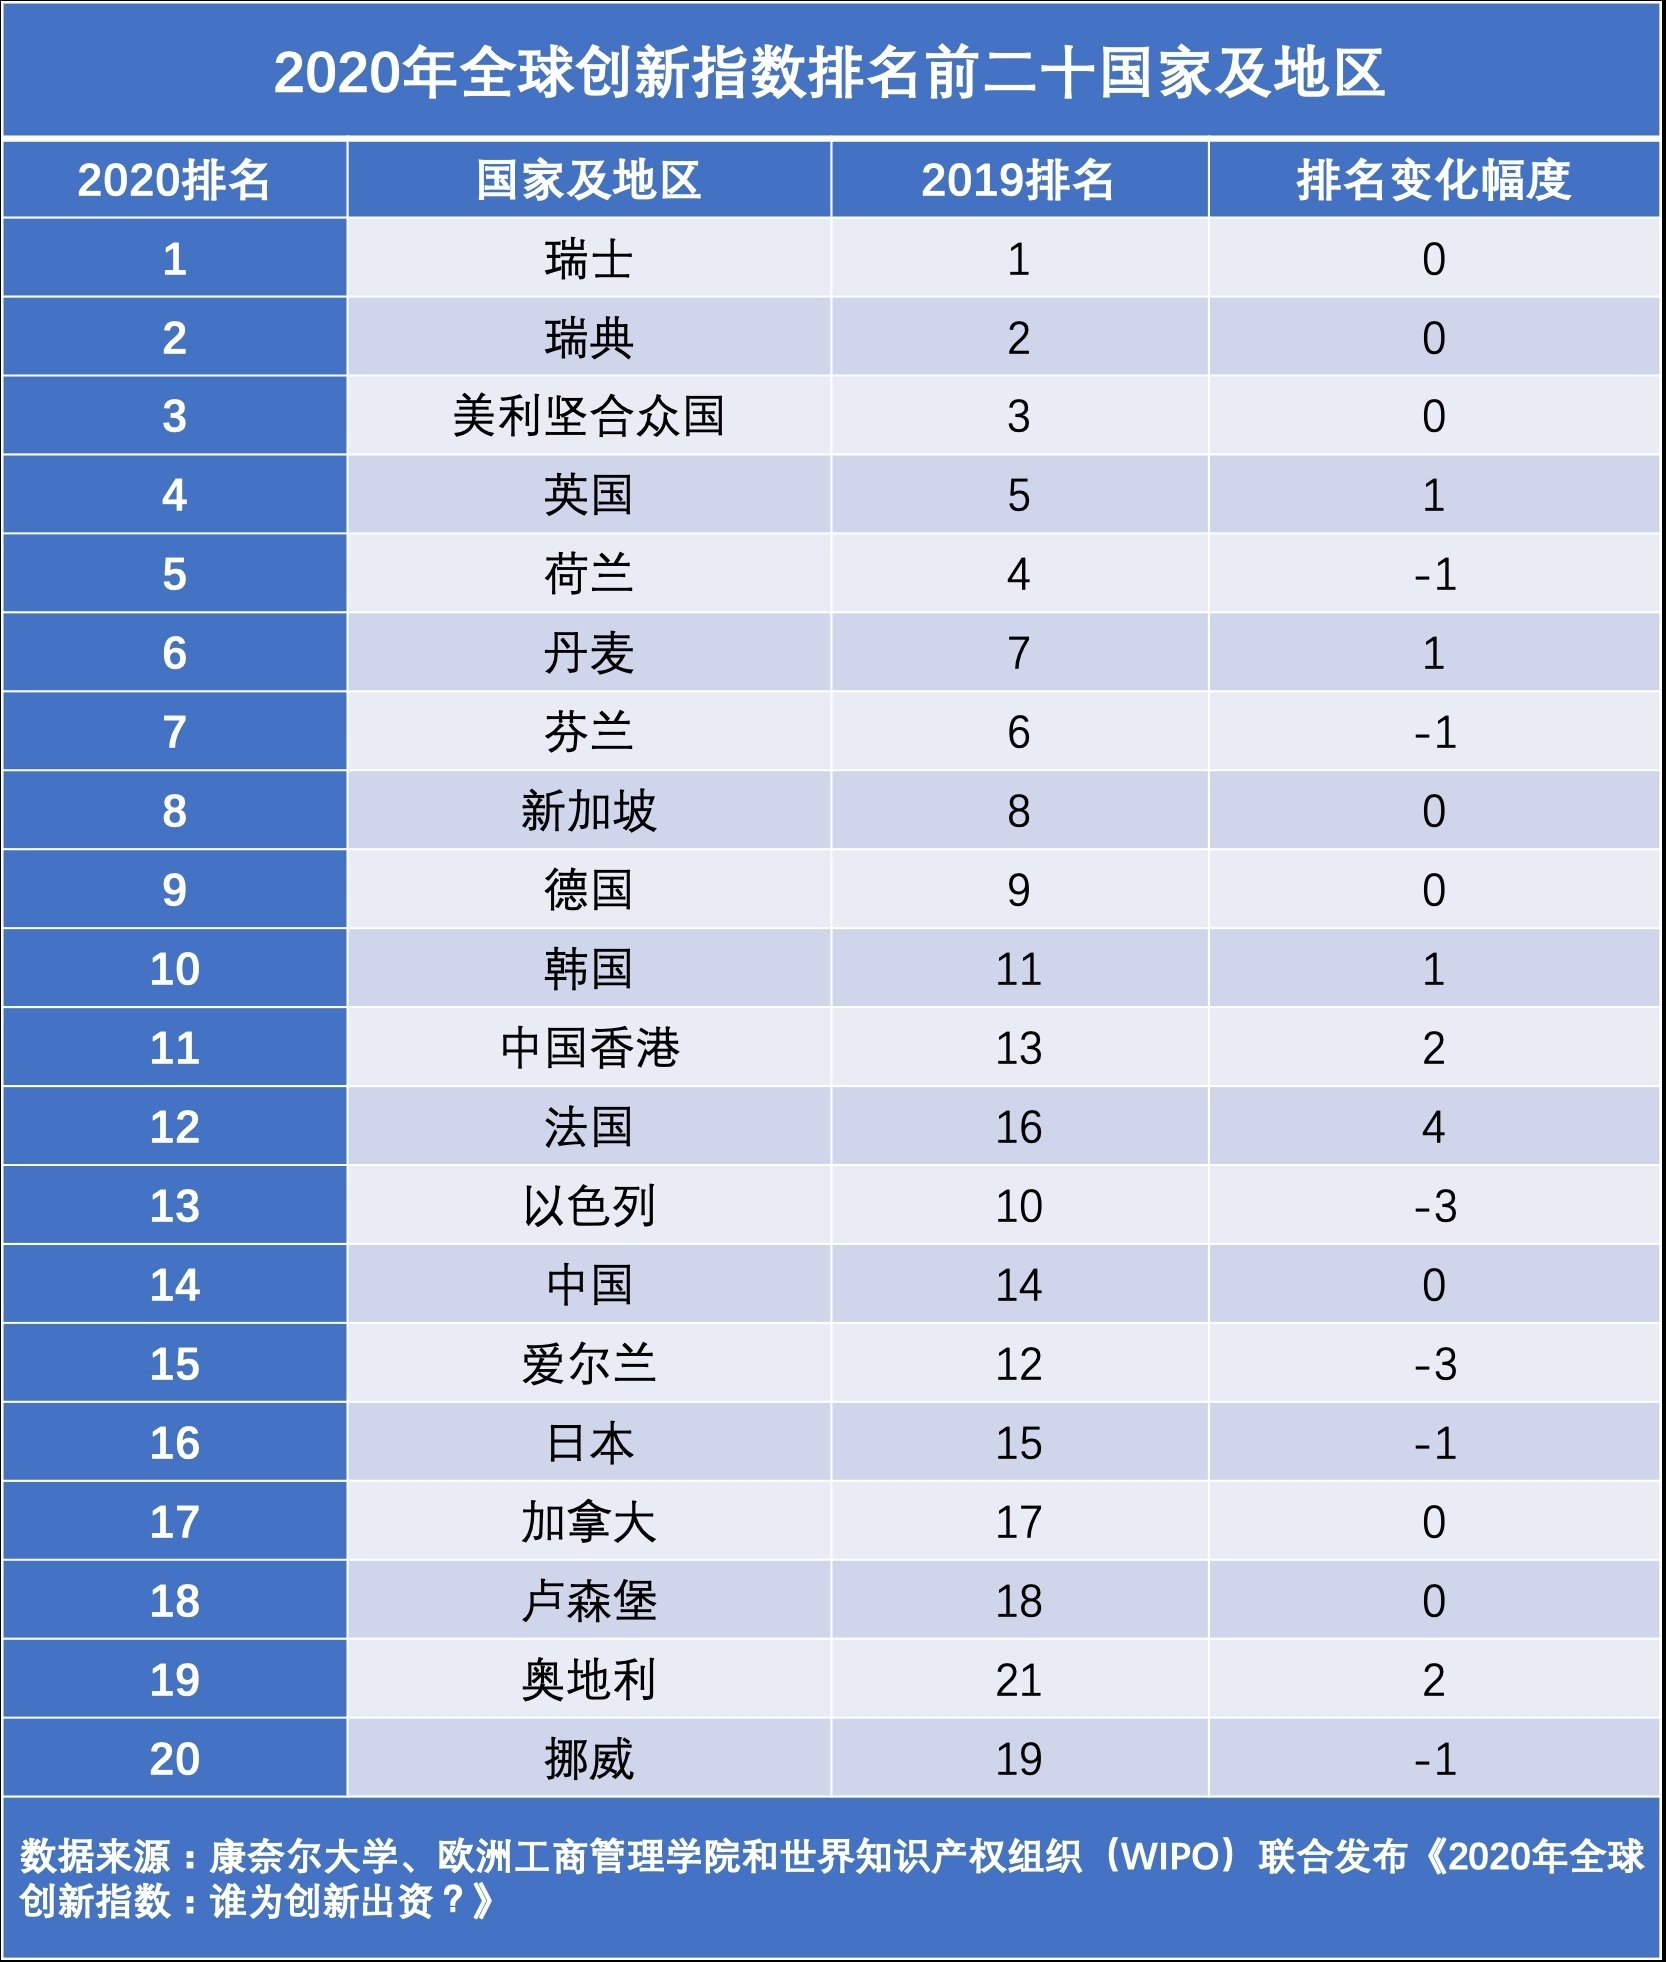 【一流湾区】全球创新核心区域东移：中国创新指数位列全球第十四，深圳-香港-广州科技集群排名全球第二